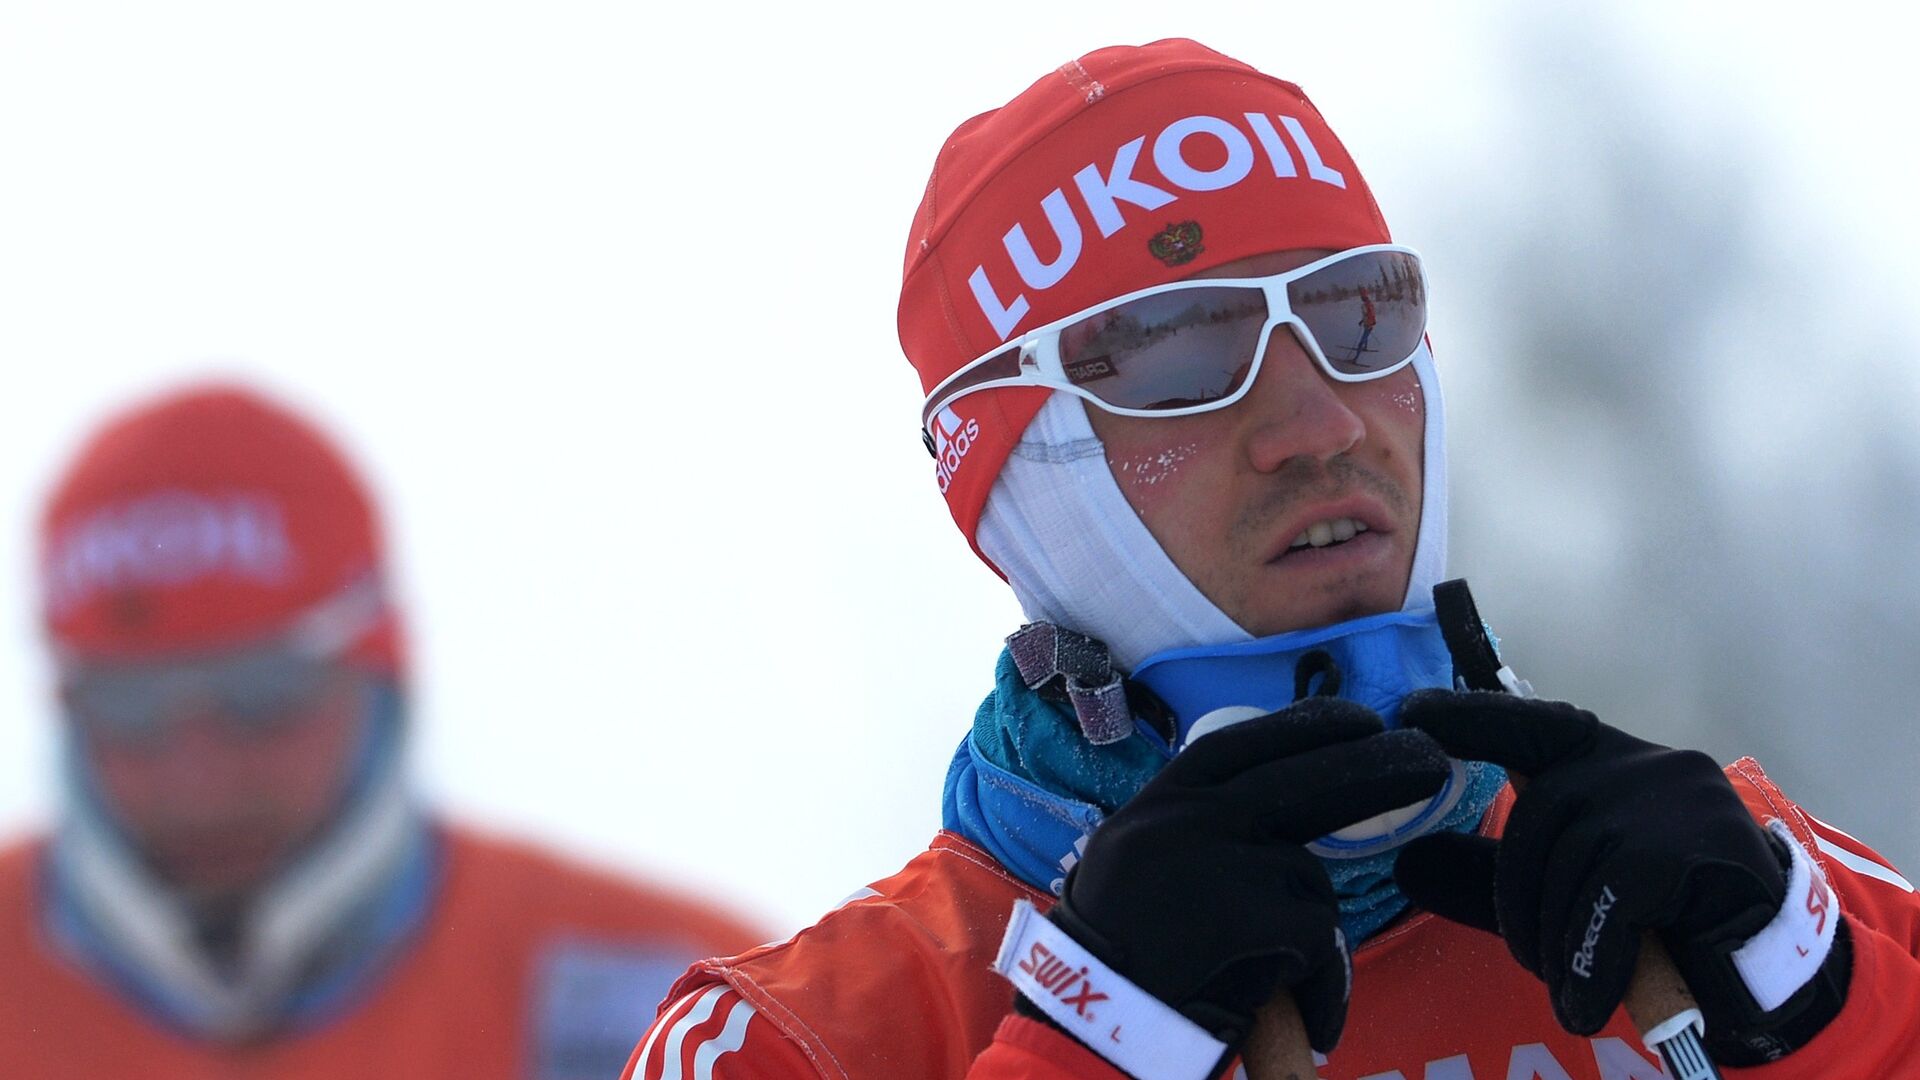 Федерация: лыжник Черноусов не является и никогда не был членом сборной Швейцарии